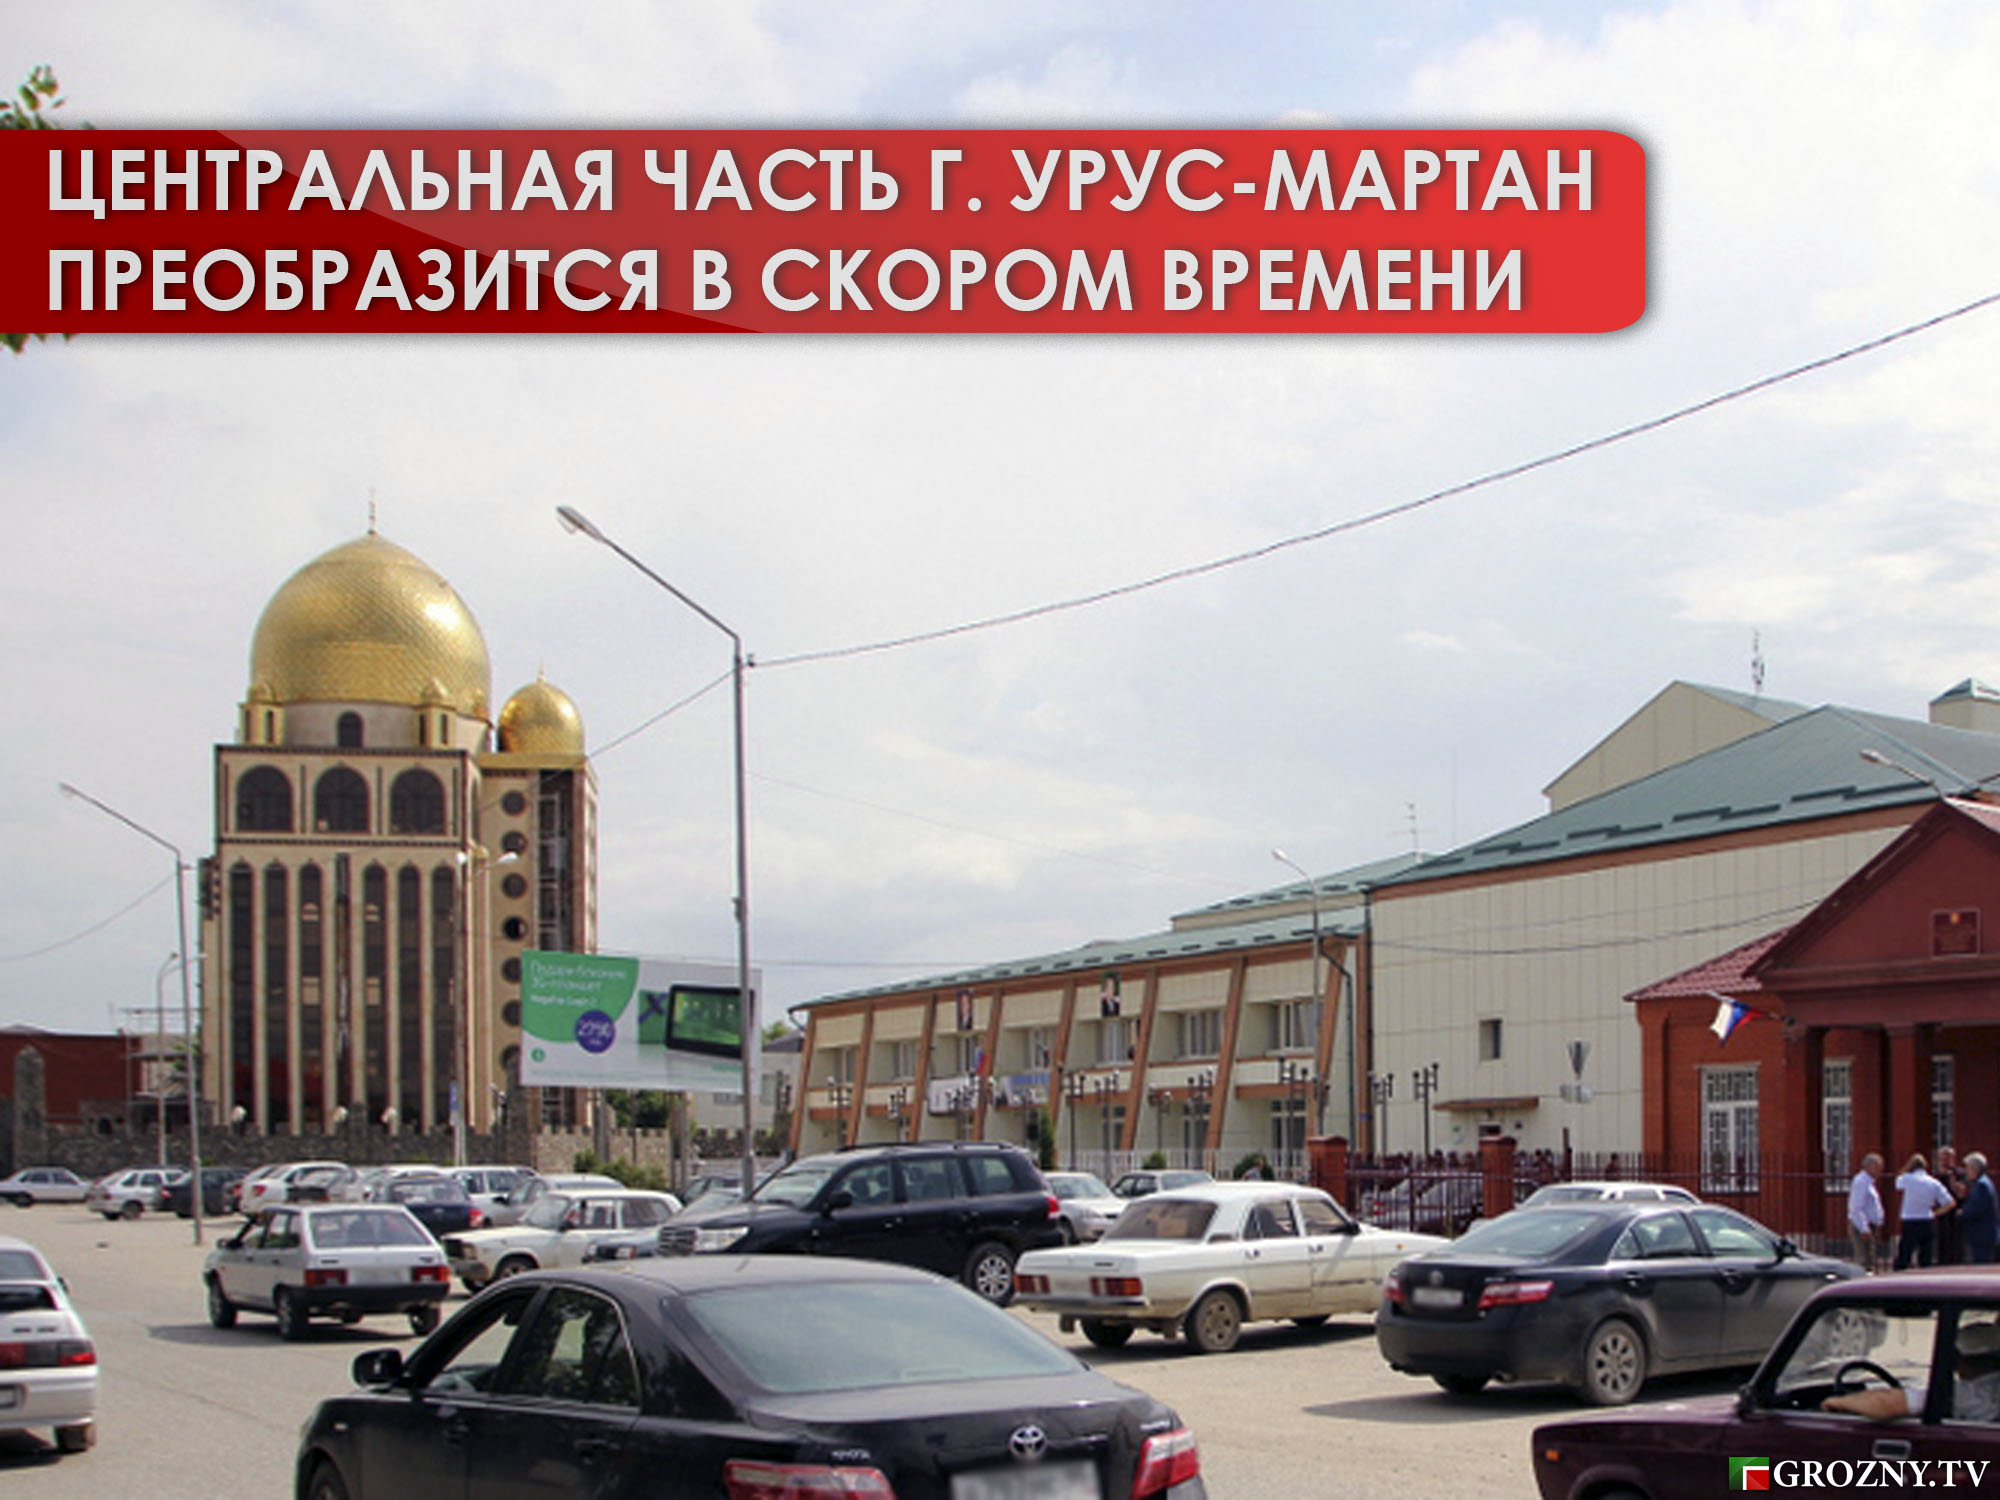 Центральная часть чеченского города Урус-Мартан преобразится в скором времени 